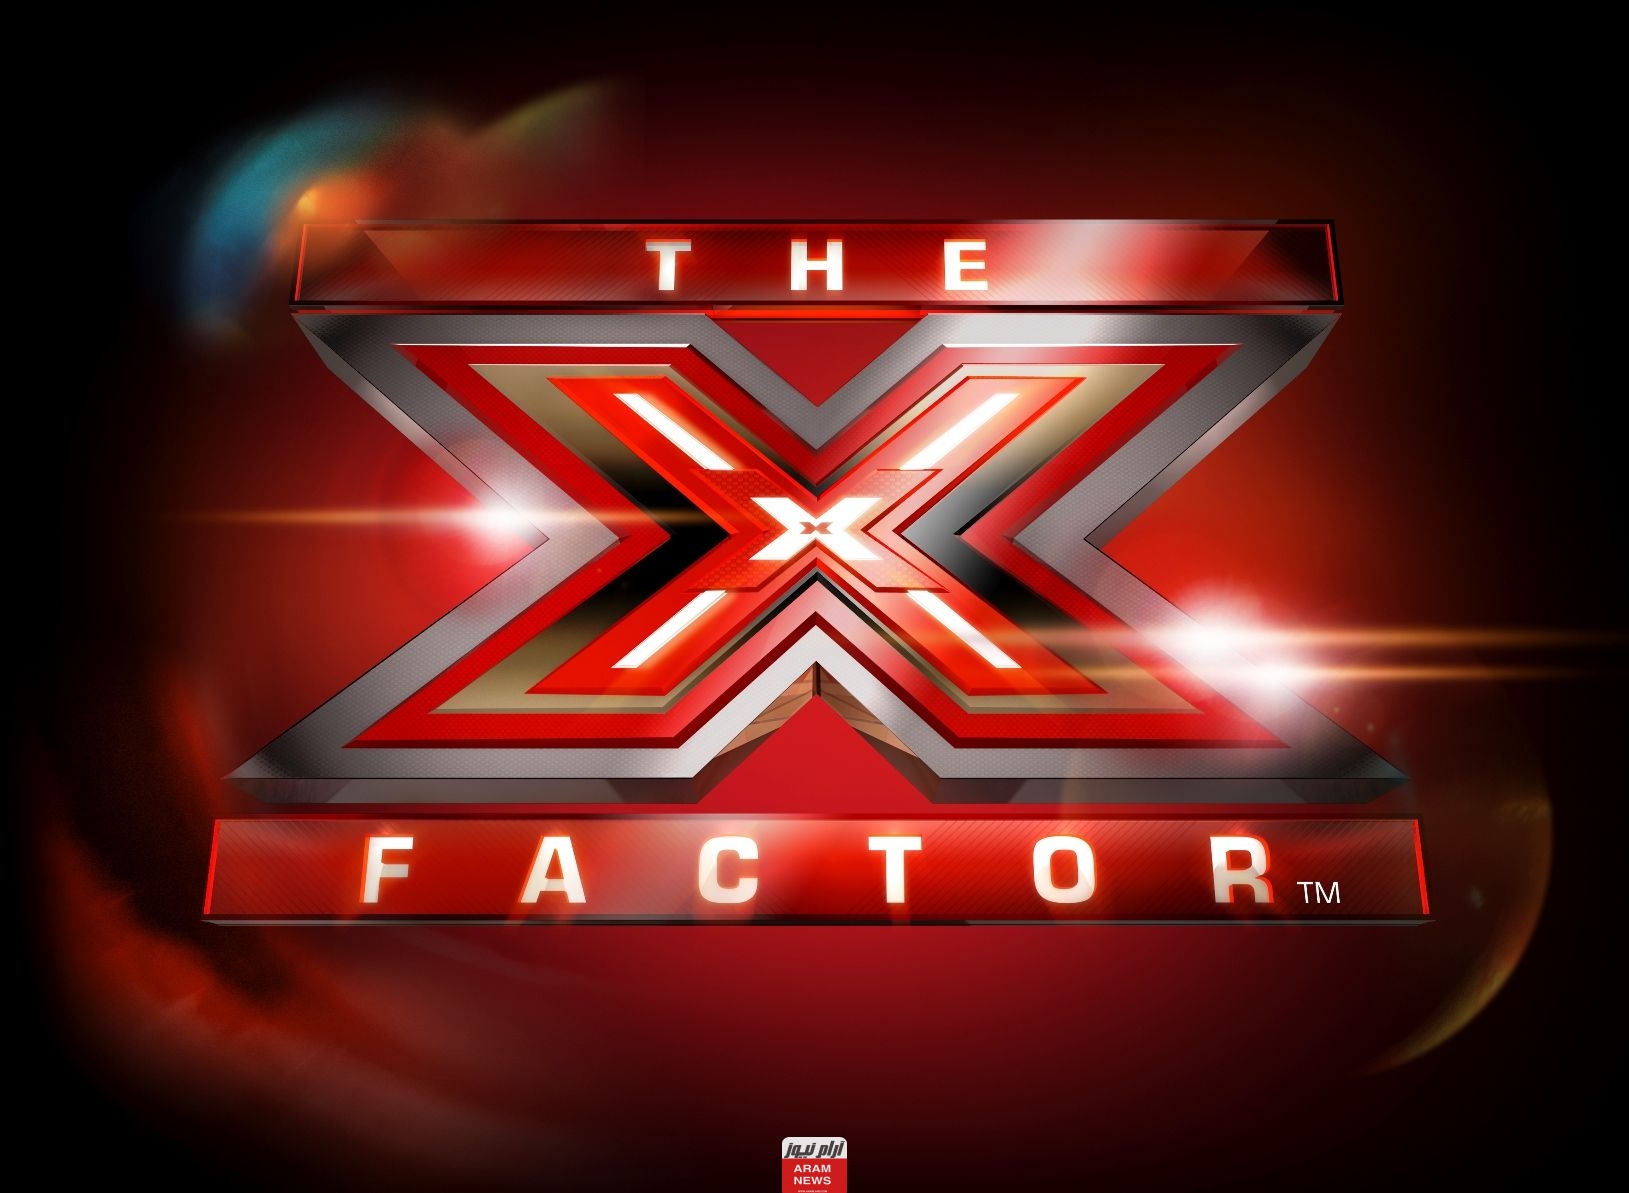 مشاهدة برنامج اكس فاكتور الحلقة 6 X Factor كاملة دقة عالية hd